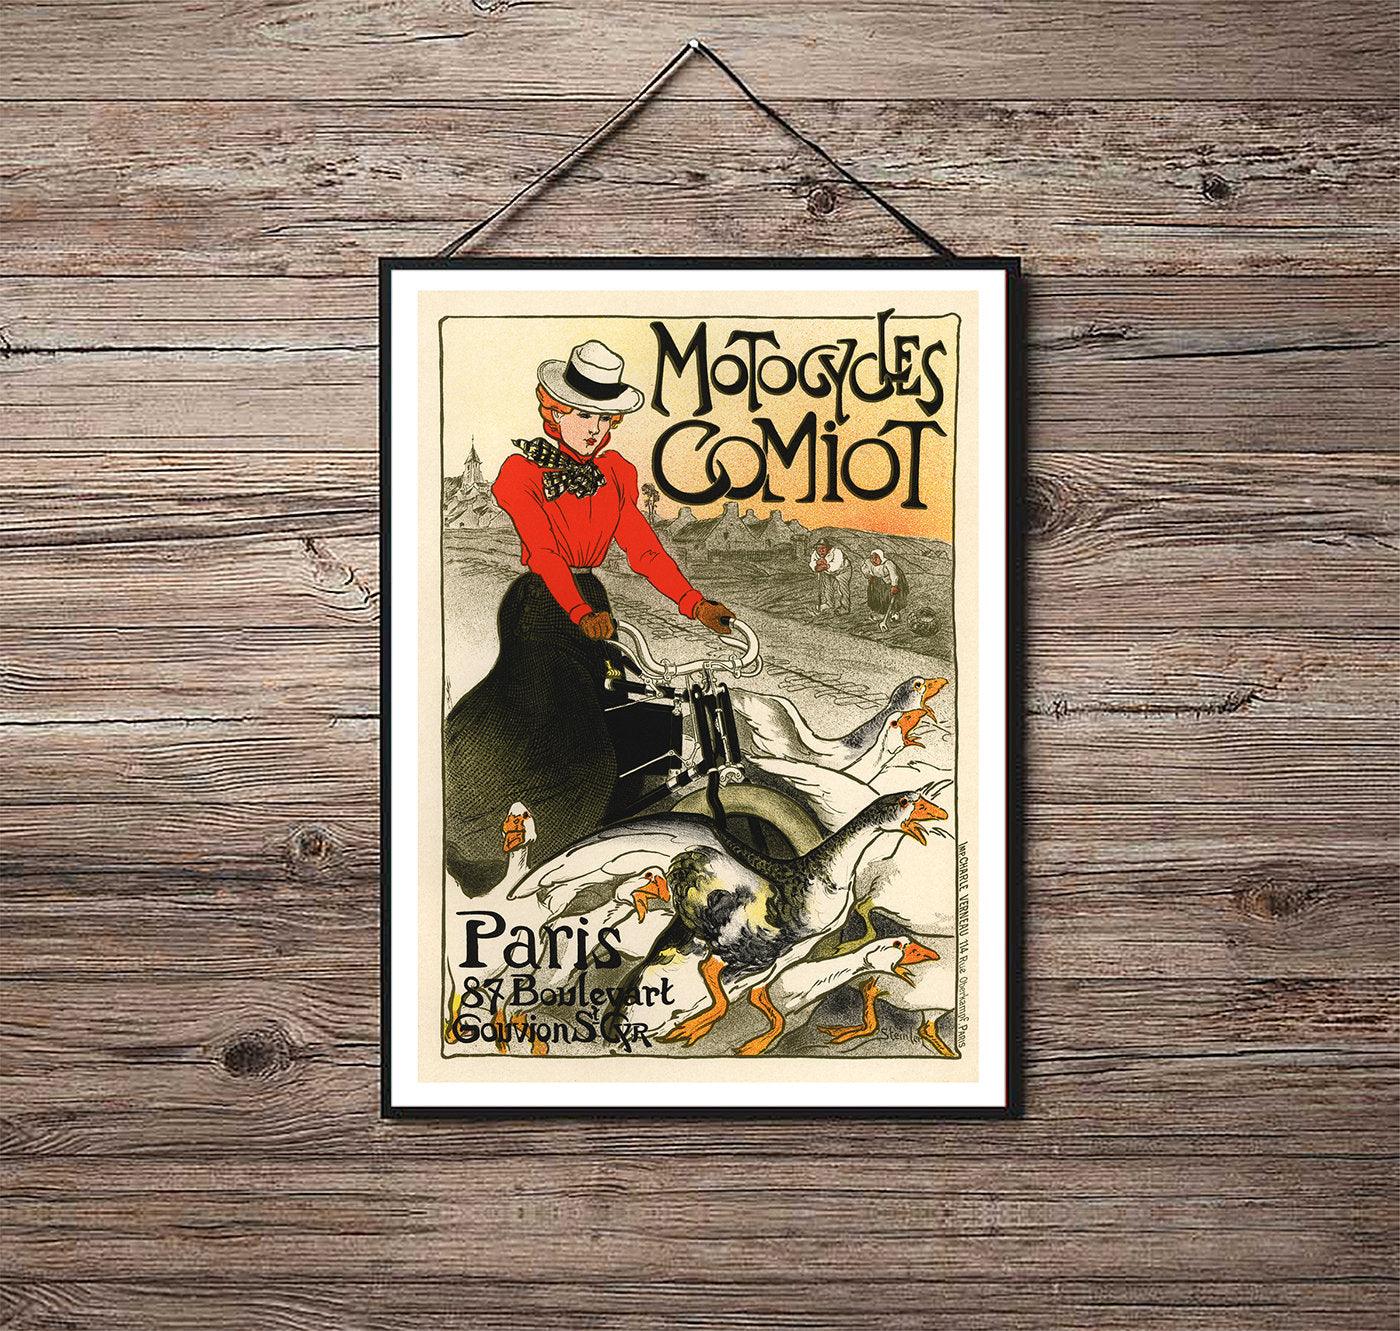 Motocycles Comiot - 1896 - Art Nouveau - Classic Posters